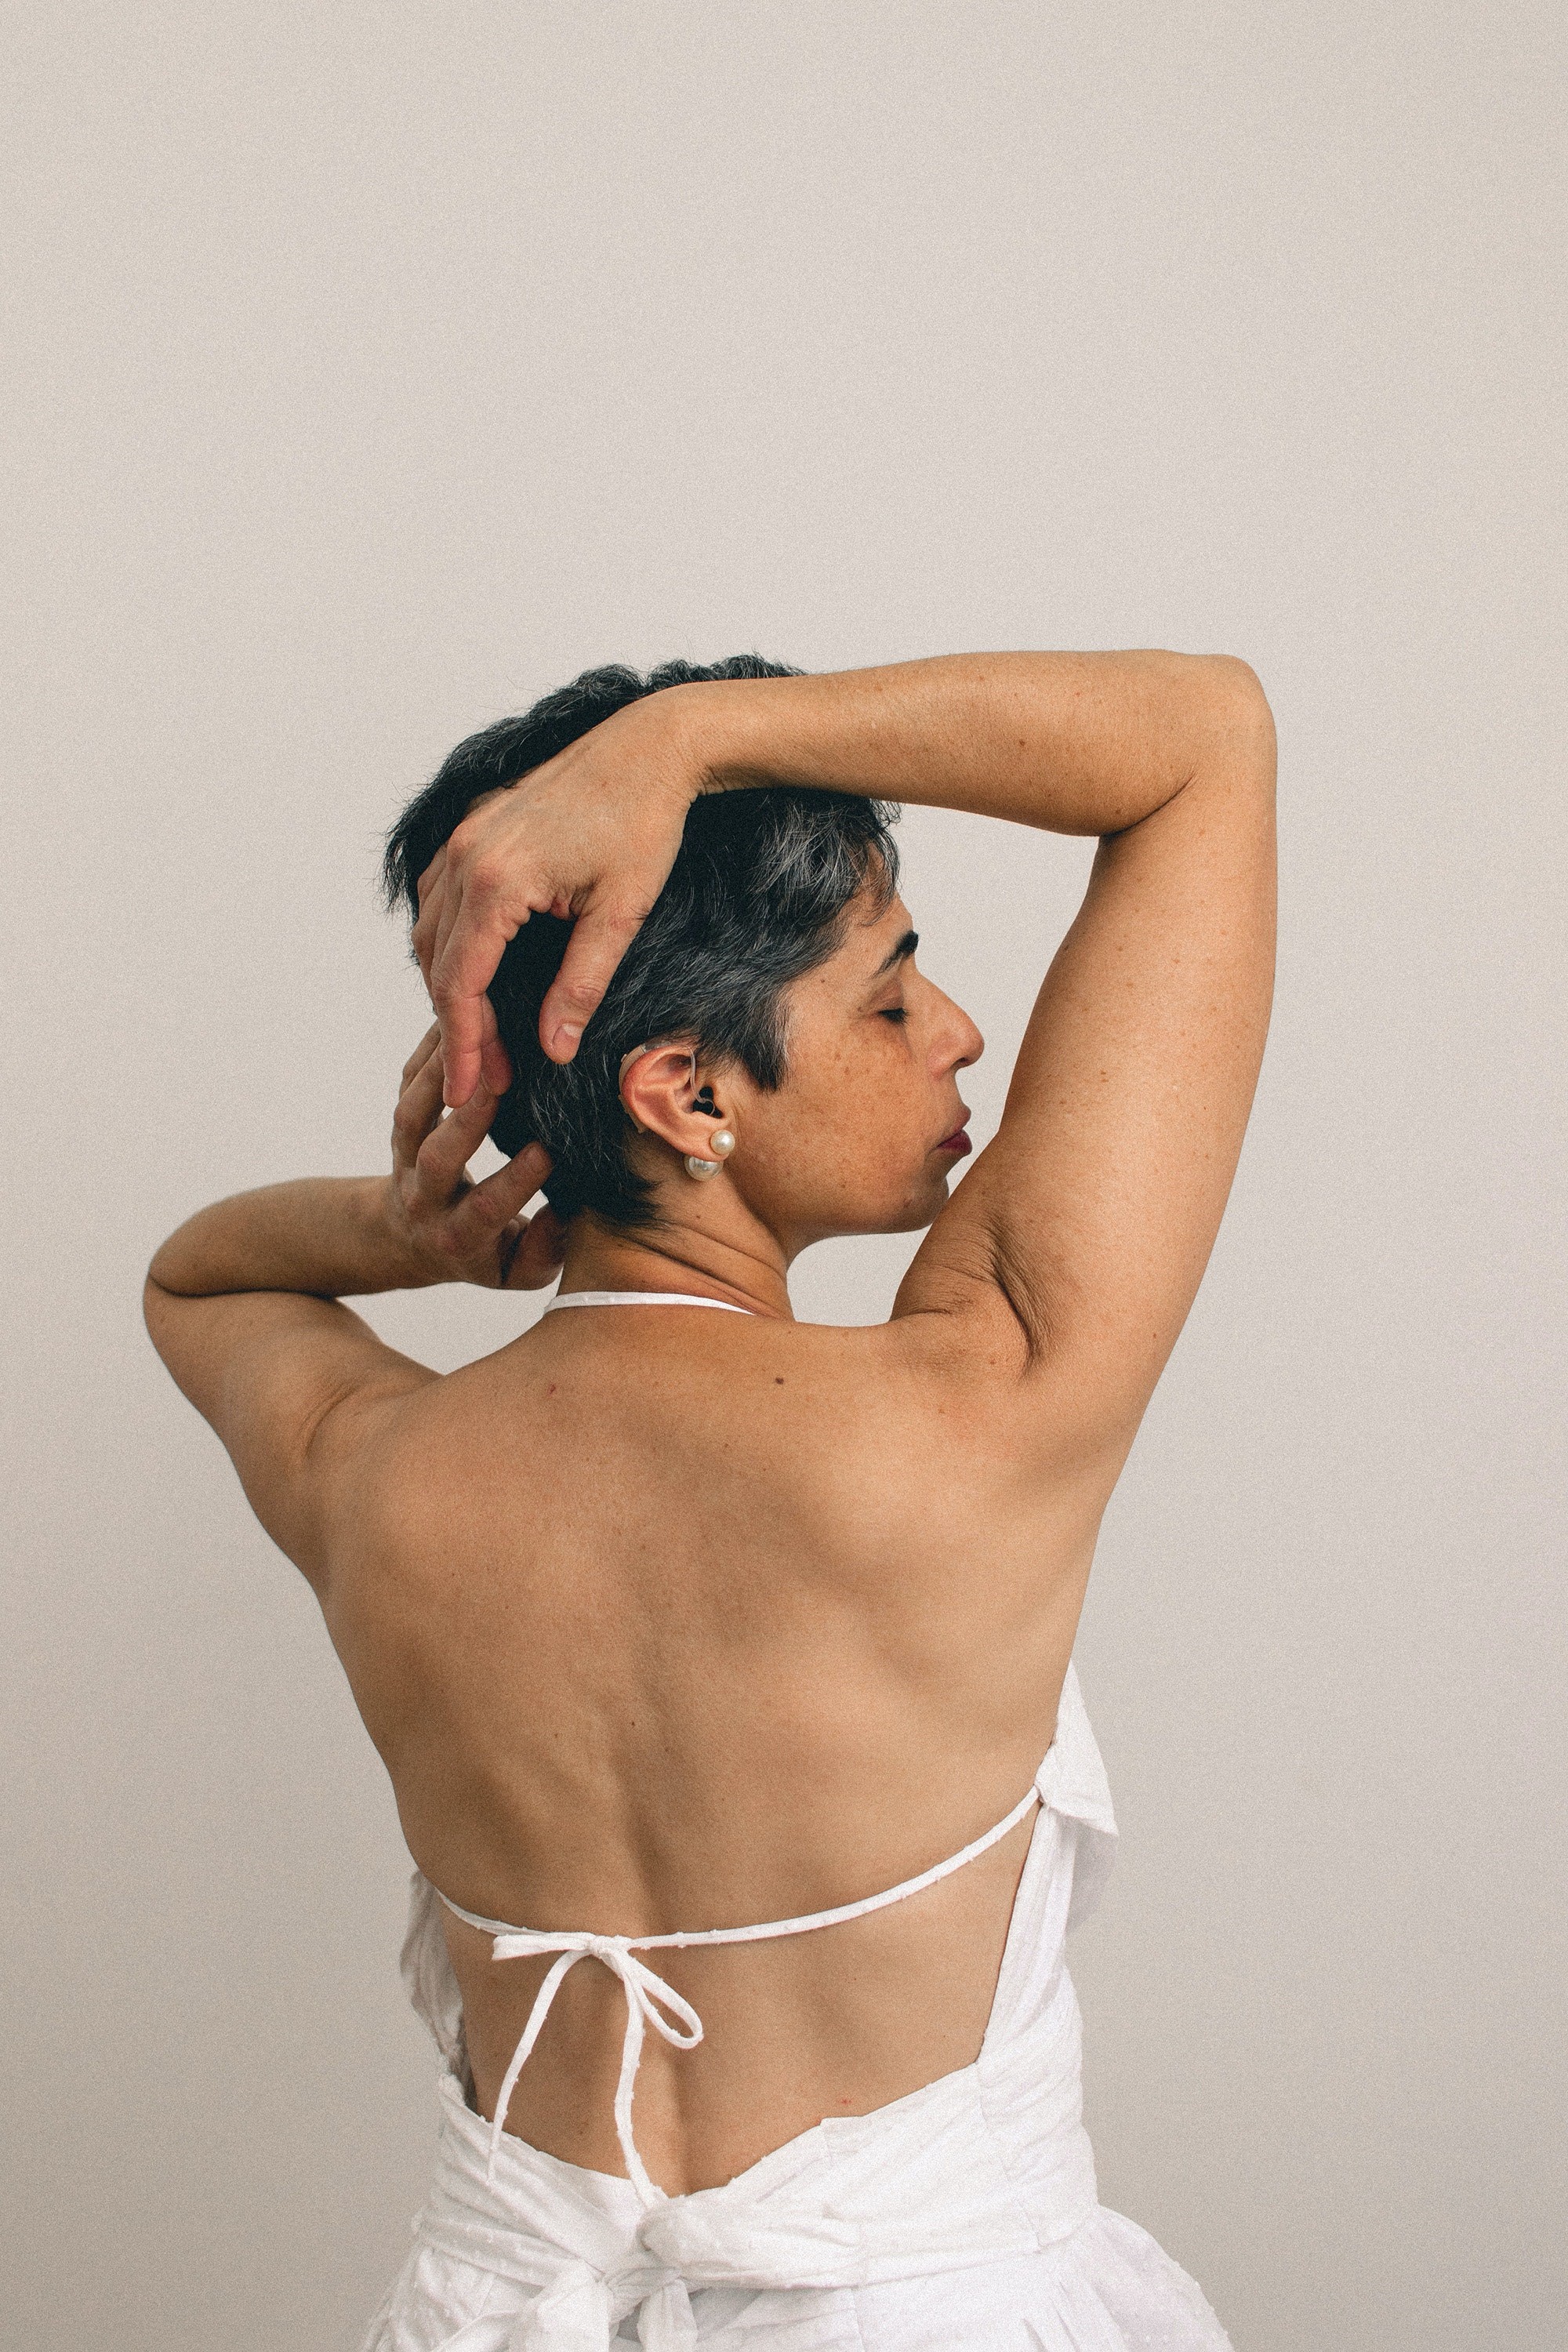 Rotina de skincare pode diminuir efeitos da menopausa na pele (Foto: Reprodução/Pexels)